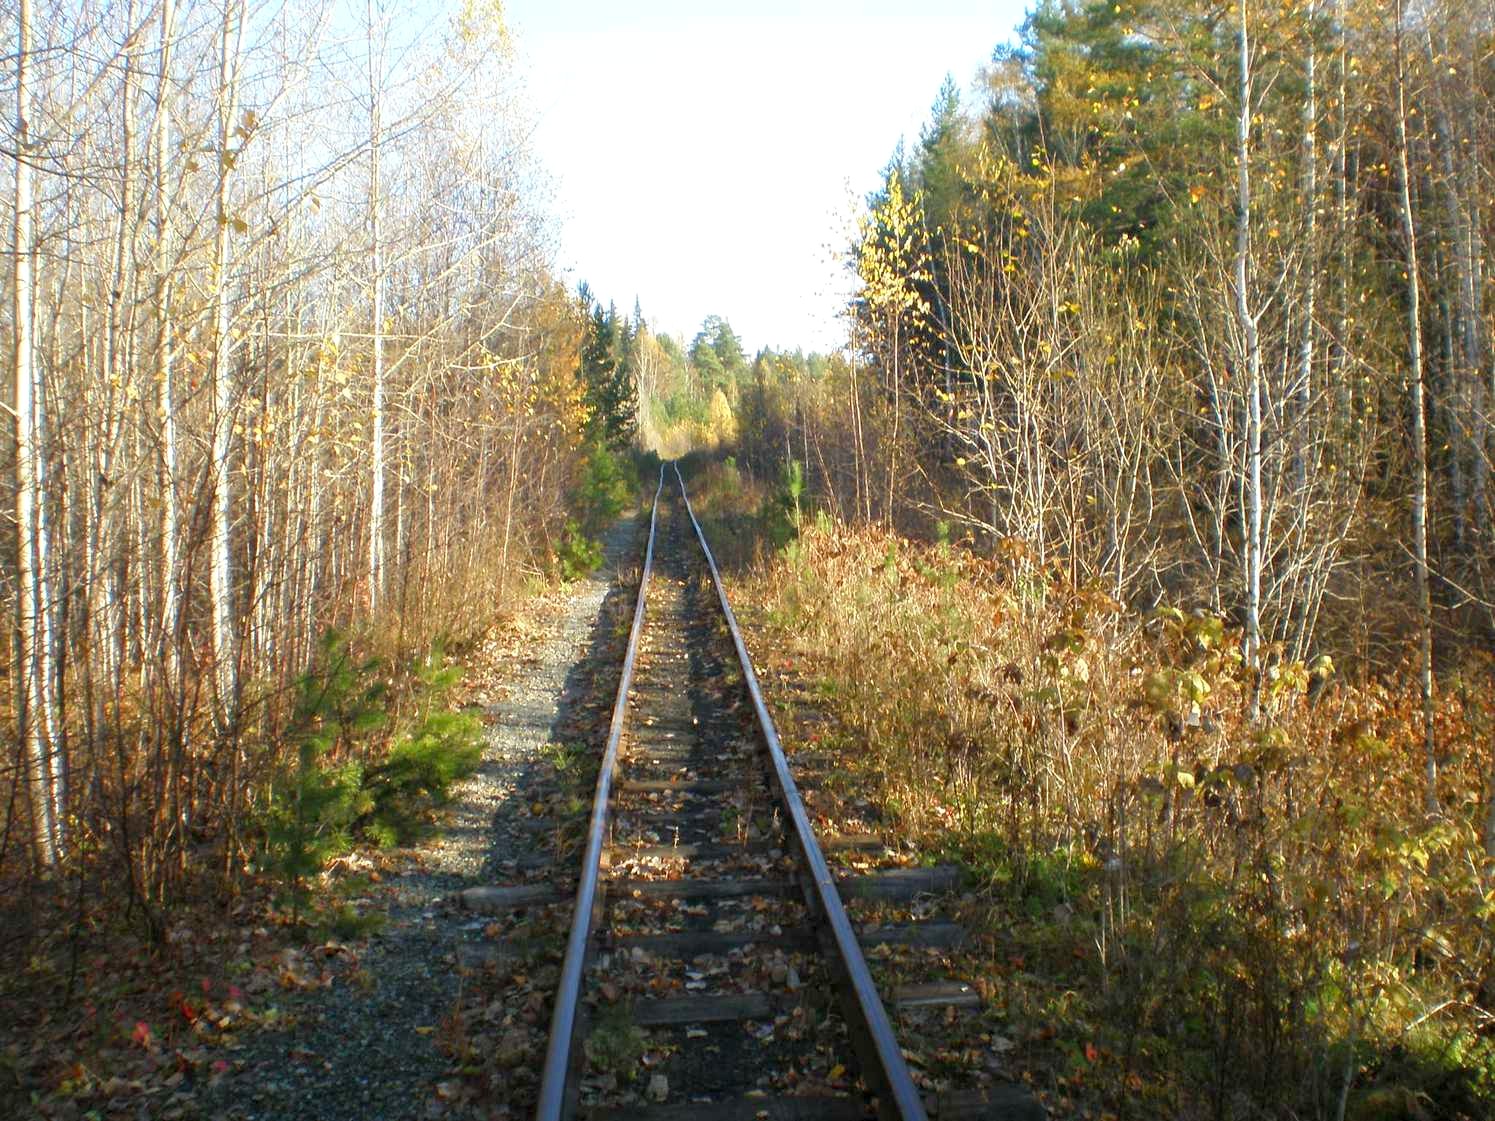 Висимо-Уткинская узкоколейная железная дорога  — фотографии, сделанные в 2007 году (часть 23)